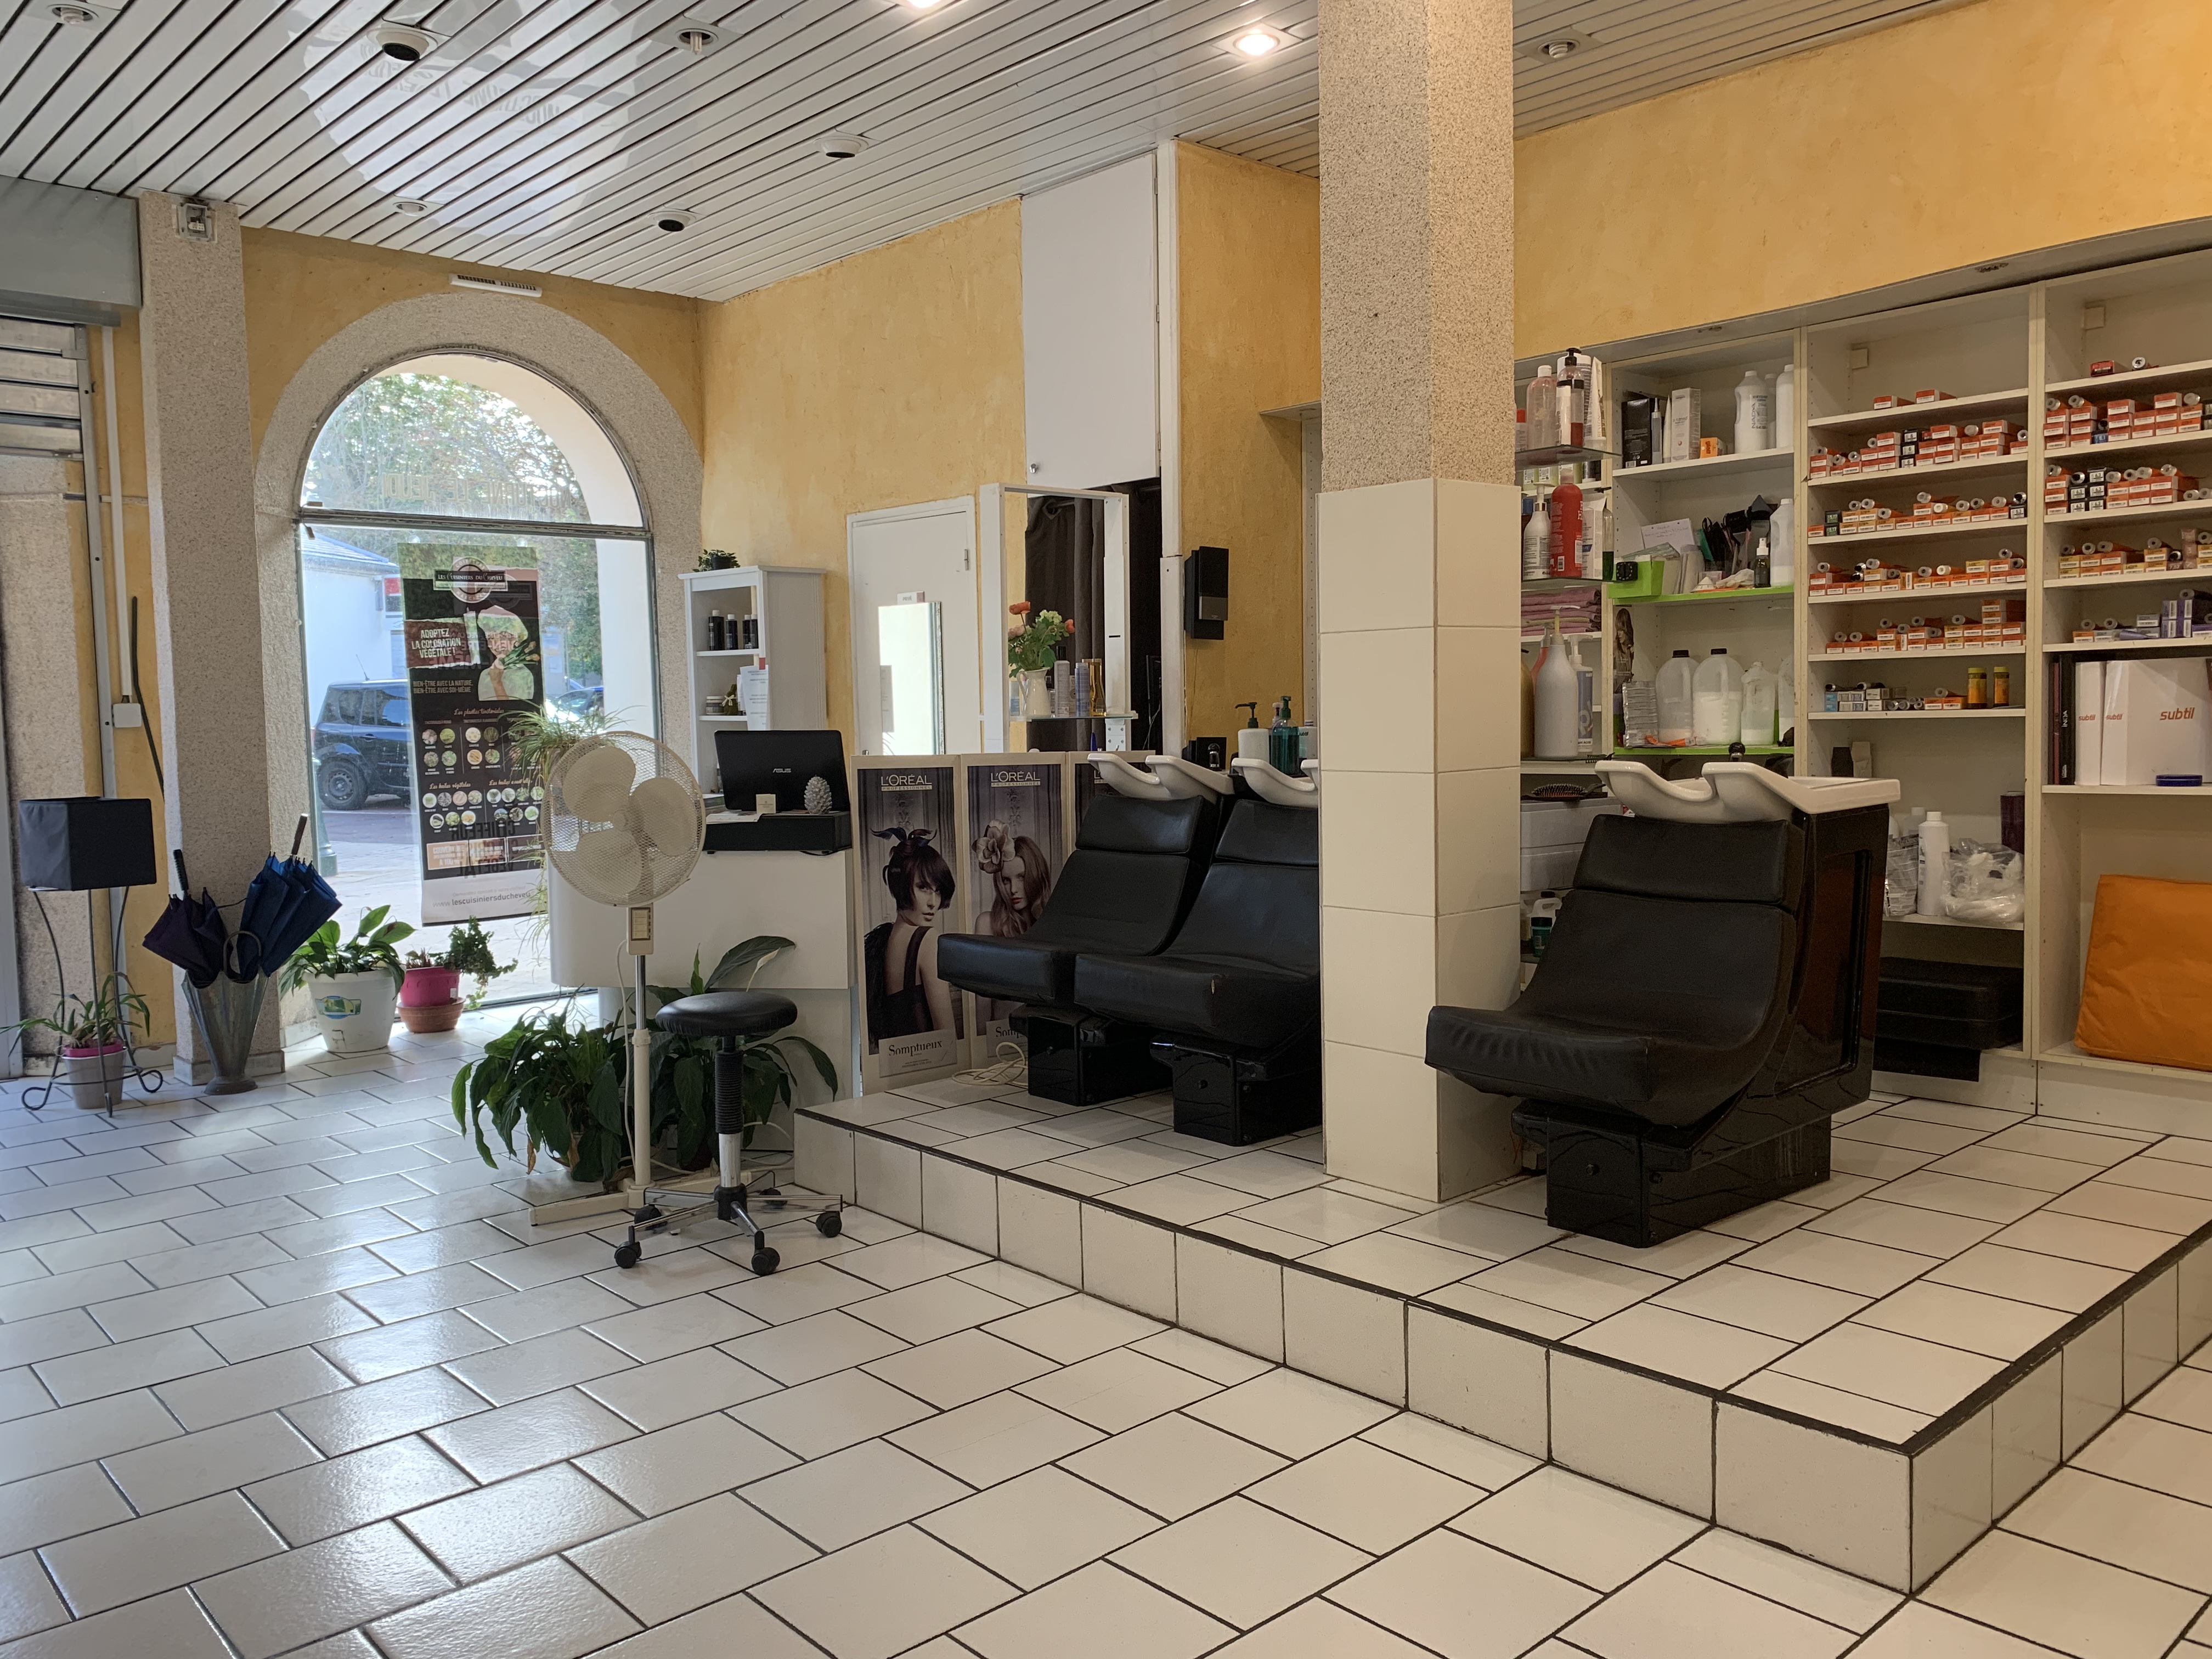 Vend salon de coiffure à SACLAY commune du grand PARIS en pleine expansion.Le salon fait 60 m2 ,6 places de coiffages,3 bacs,un coin cuisine et une petite pièce (coin repas,réservé).Le local appartient à la commune.le loyer est de 473,13/mois